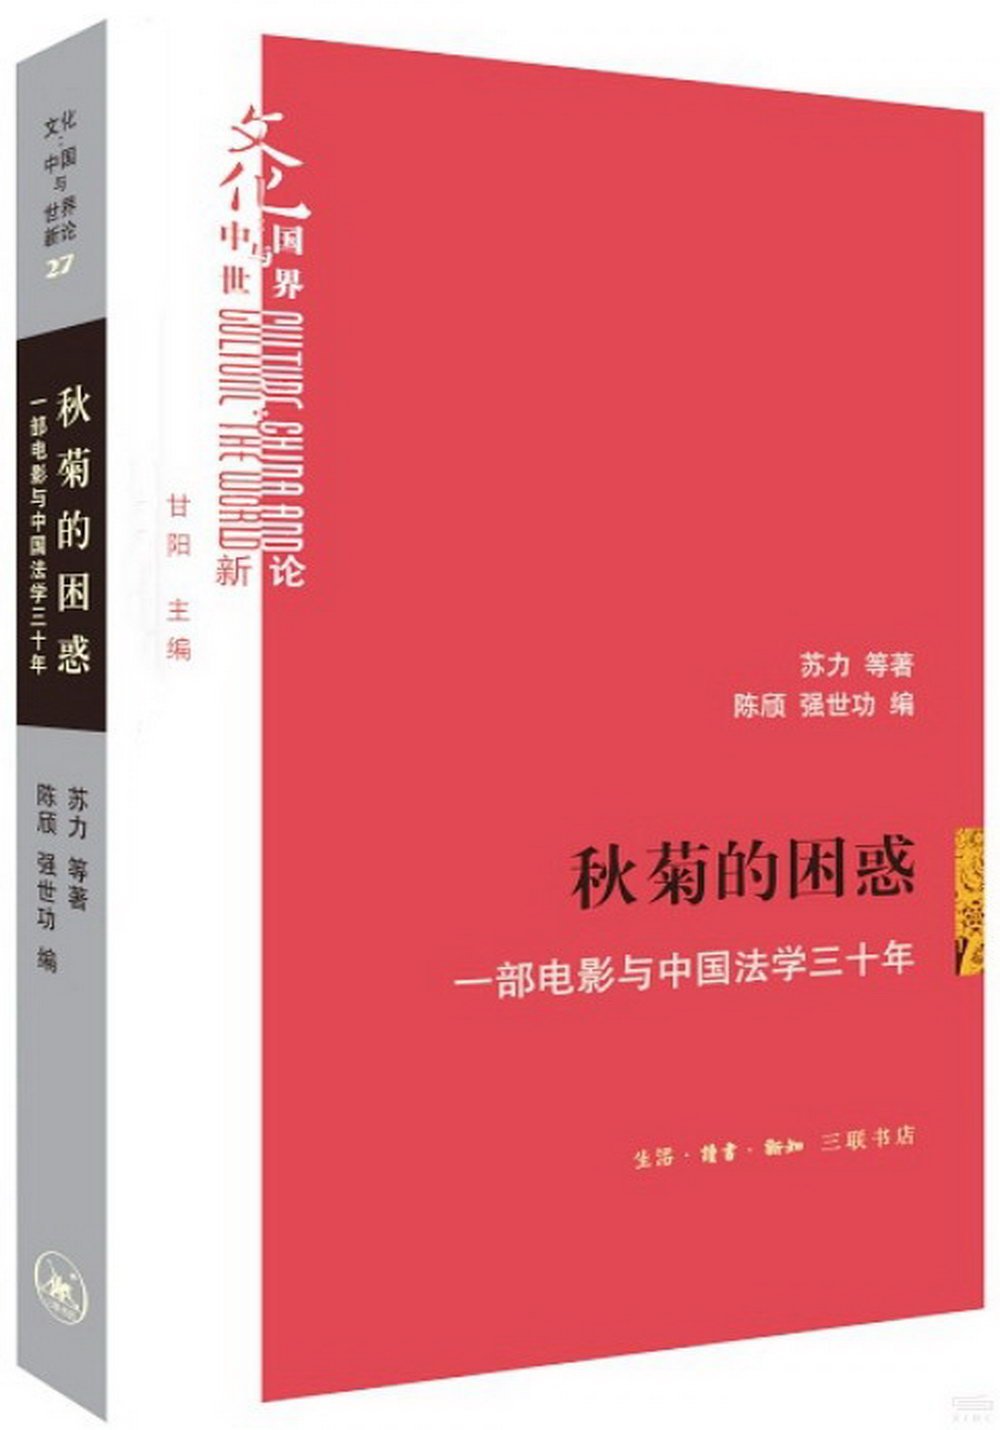 秋菊的困惑：一部電影與中國法學三十年